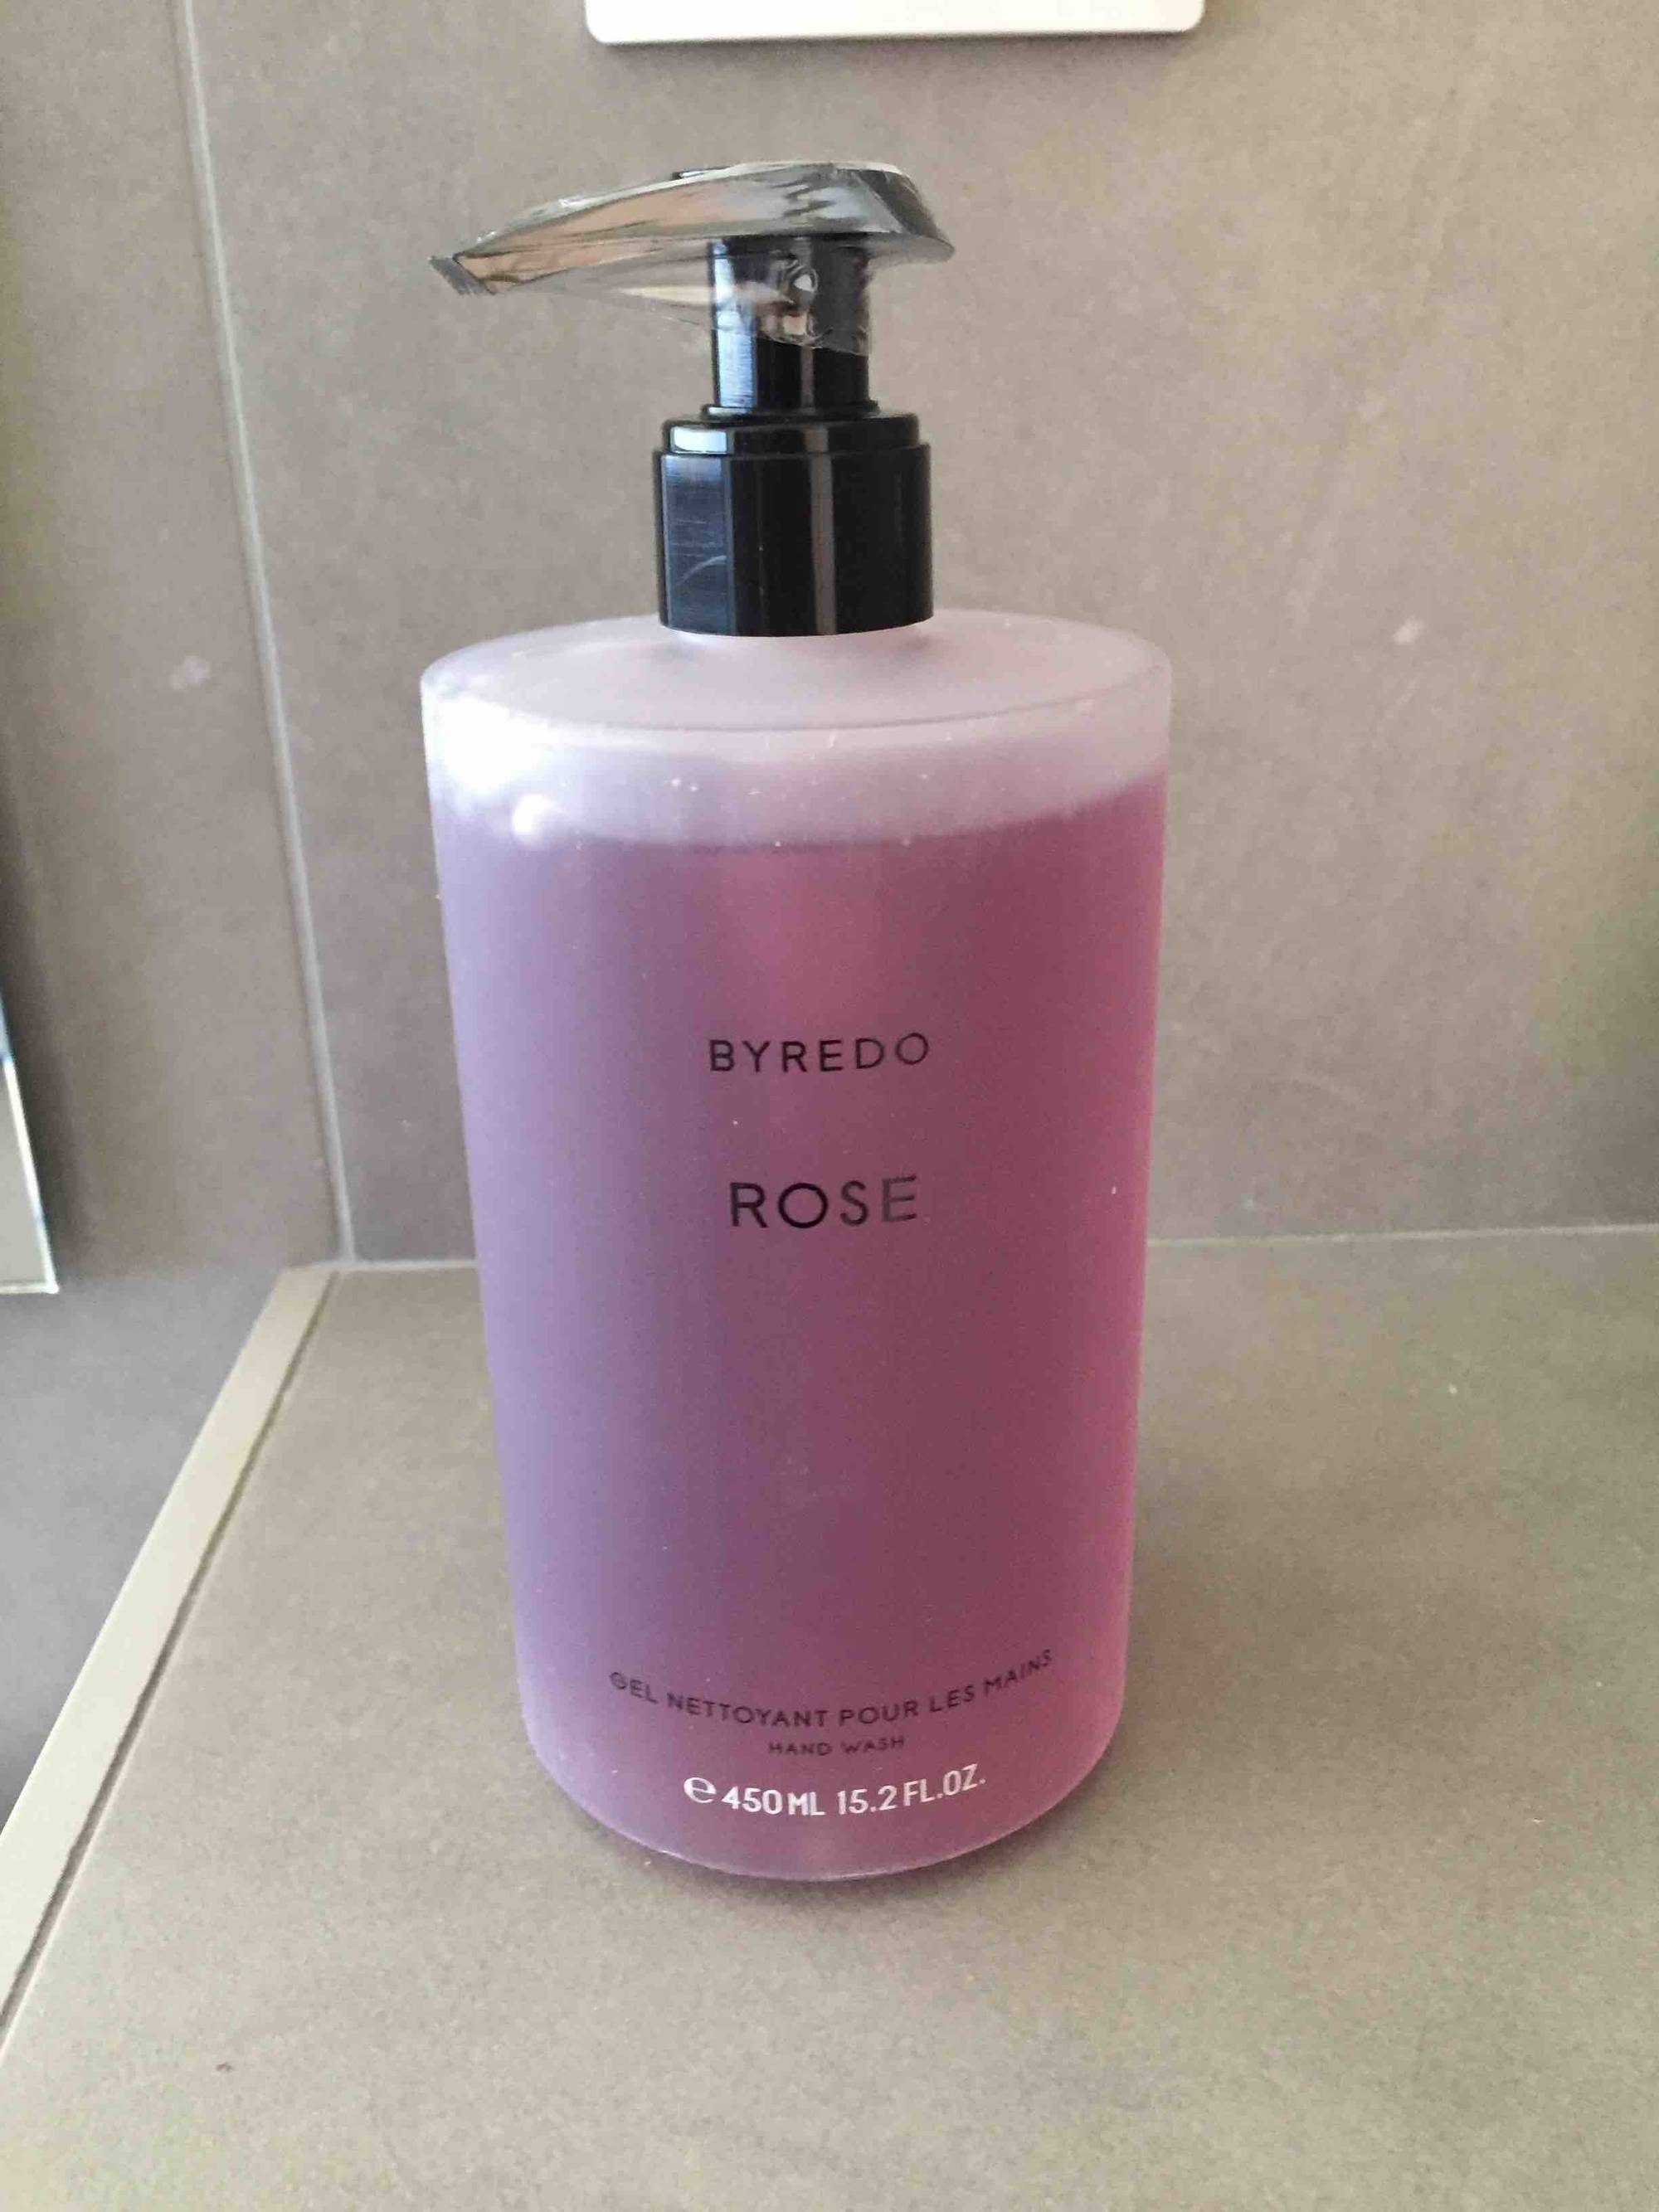 BYREDO - Rose - Gel nettoyant pour les mains 